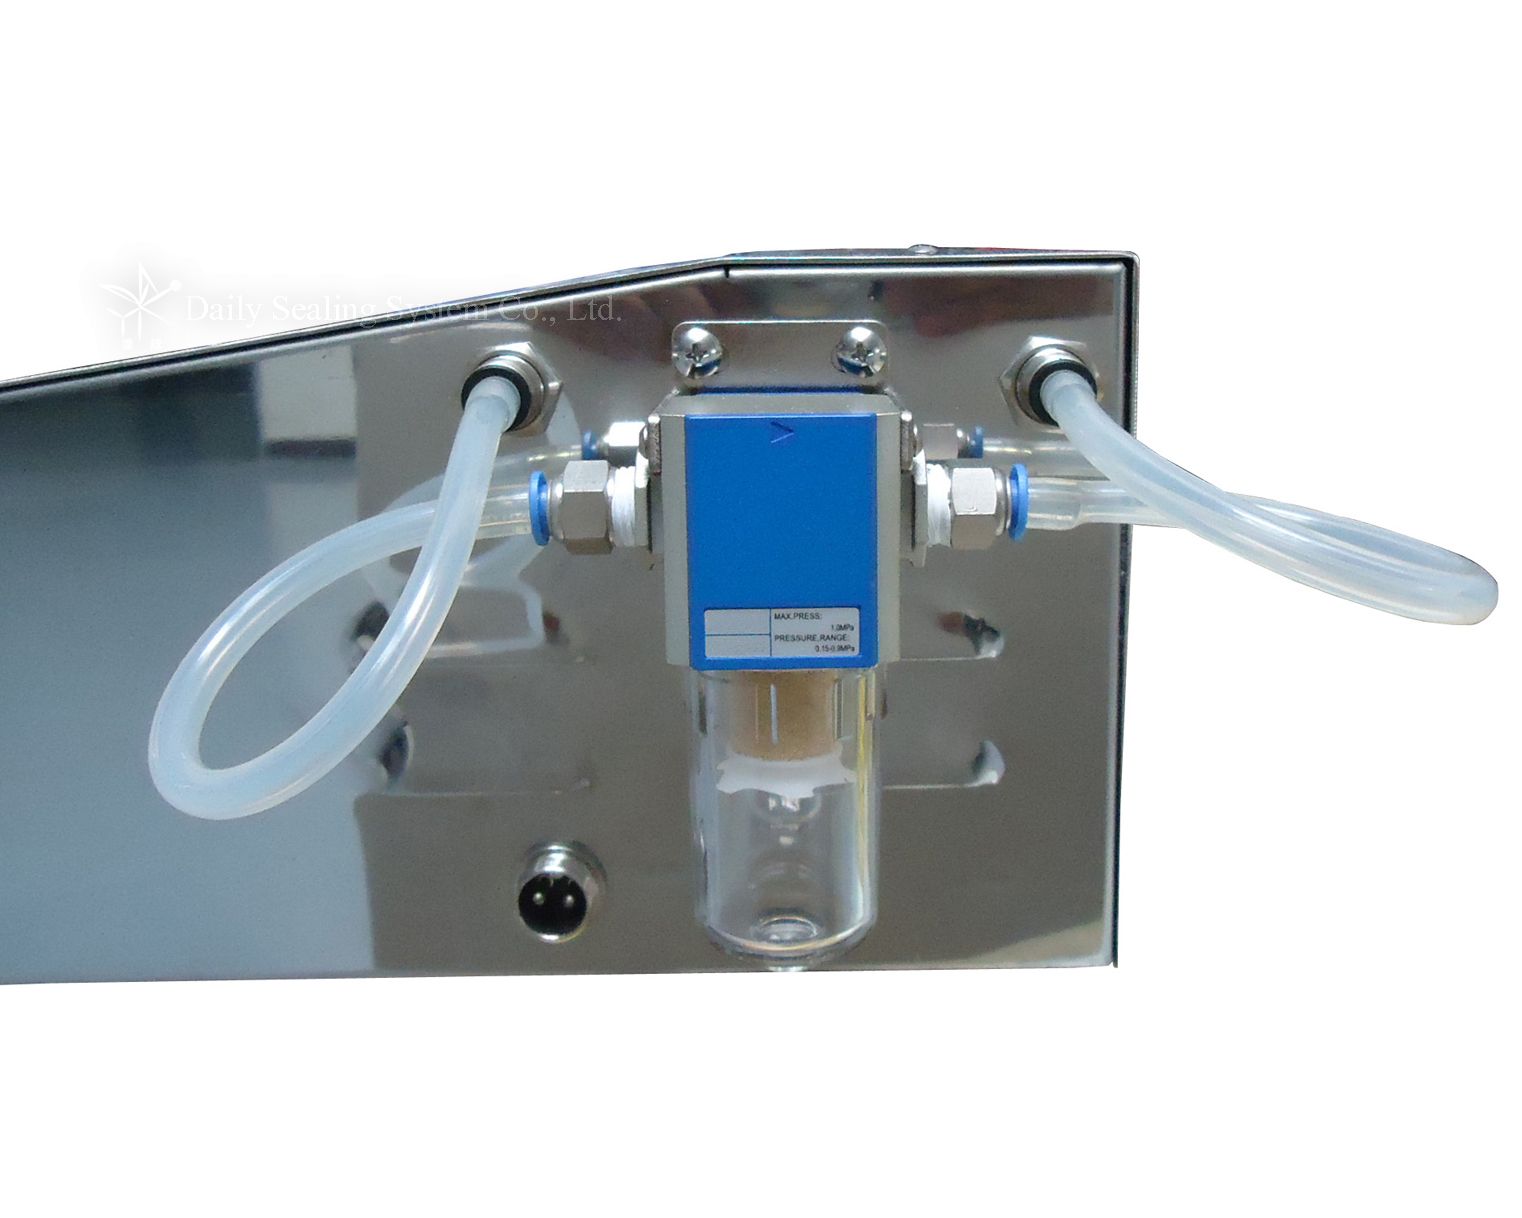 DVNT-305 Commercial nozzle vacuum sealer